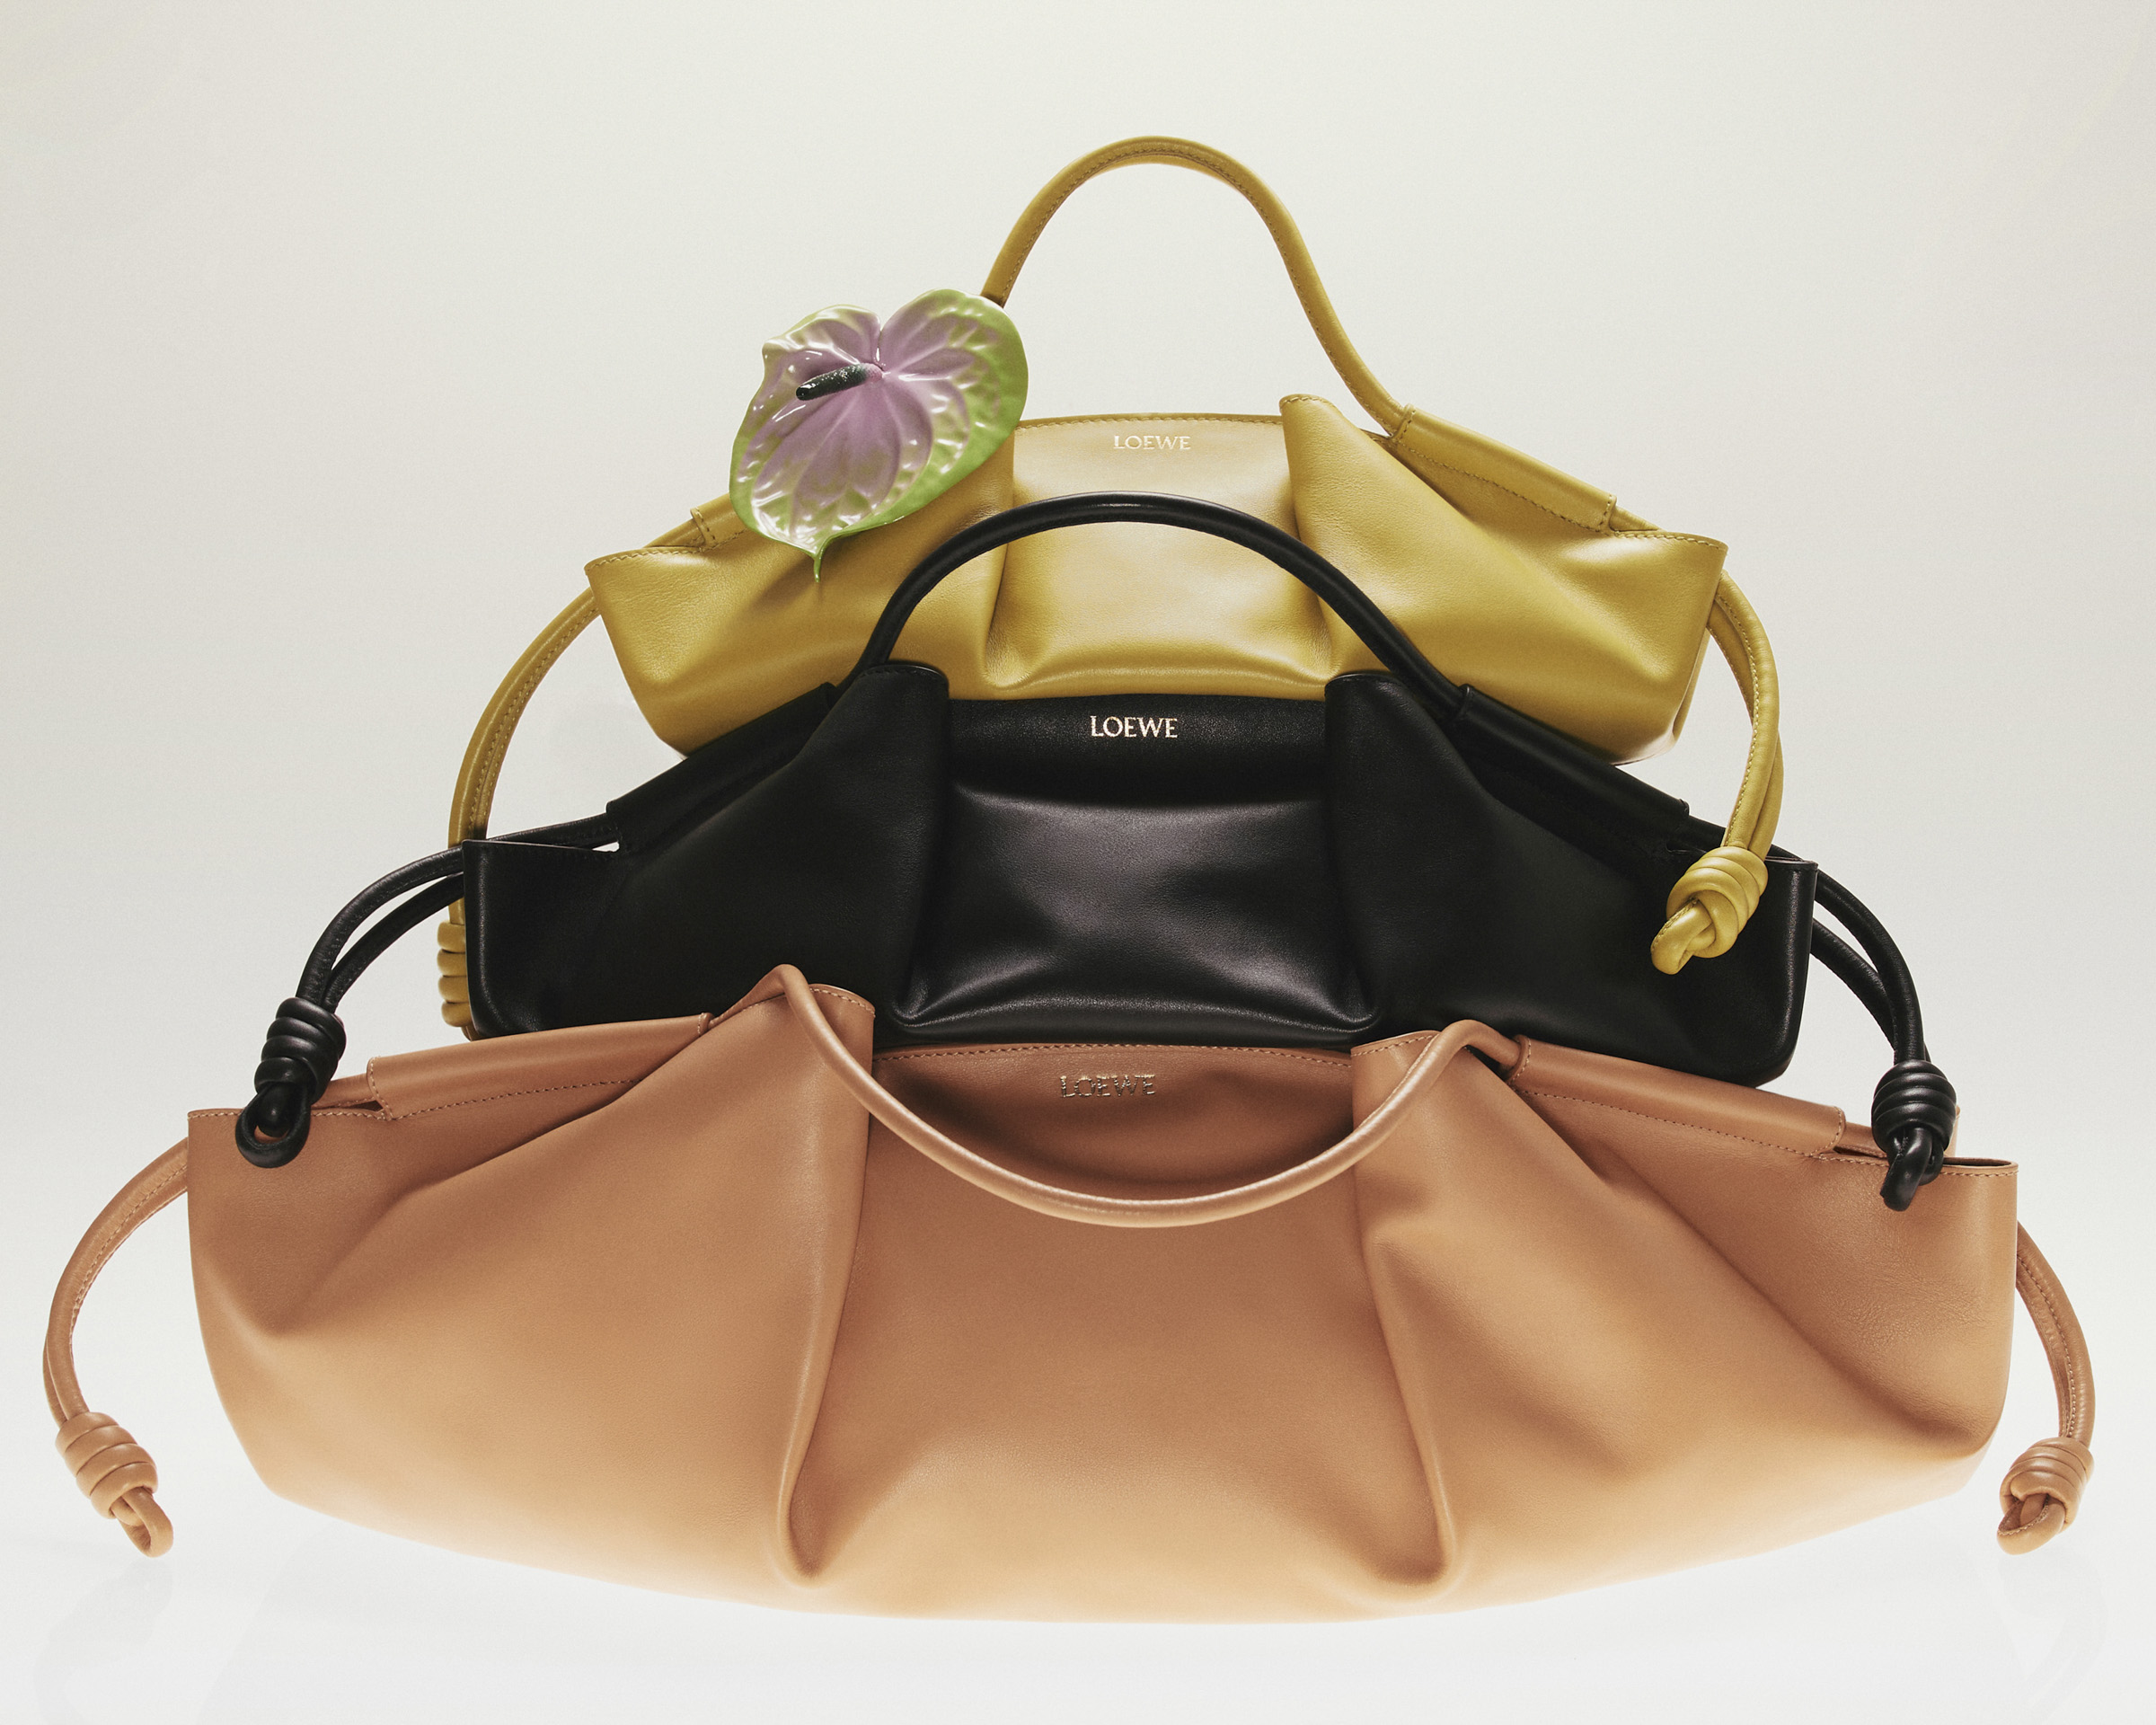 ロエベが日本展開50周年記念バッグを発売 窪塚洋介らを起用した 